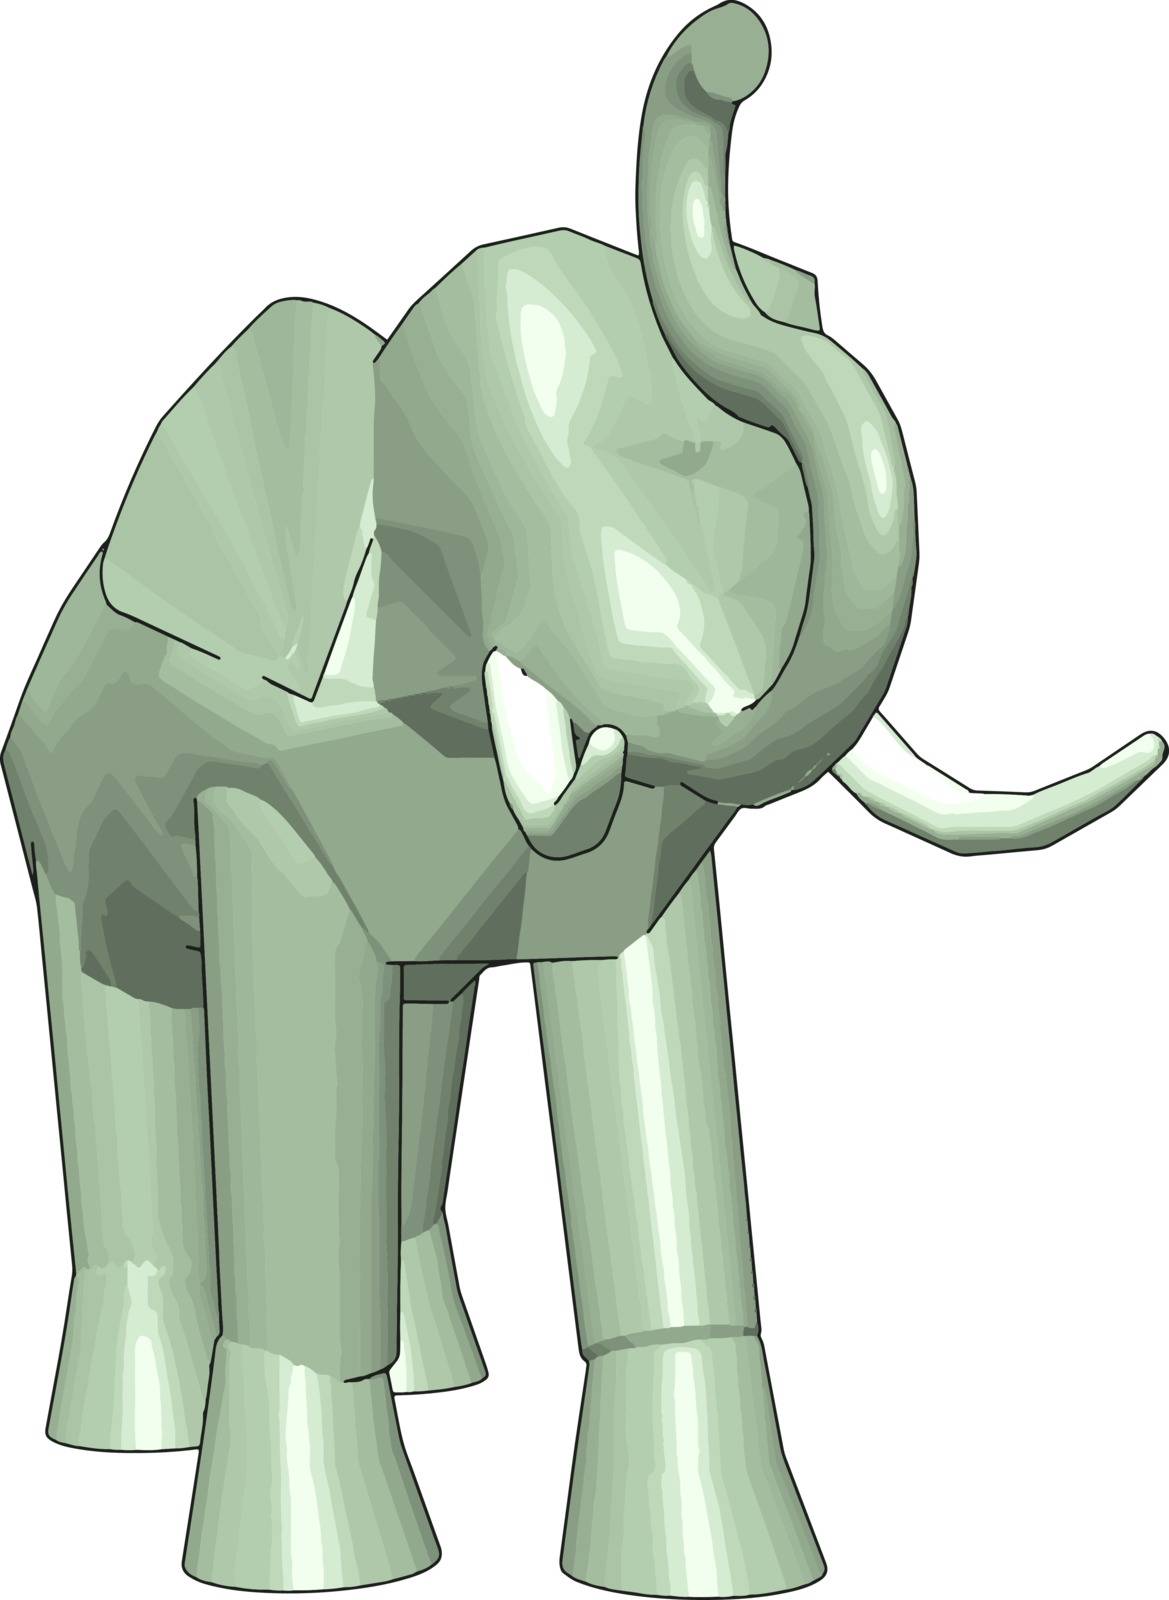 3D model of elephant, illustration, vector on white background. by Morphart